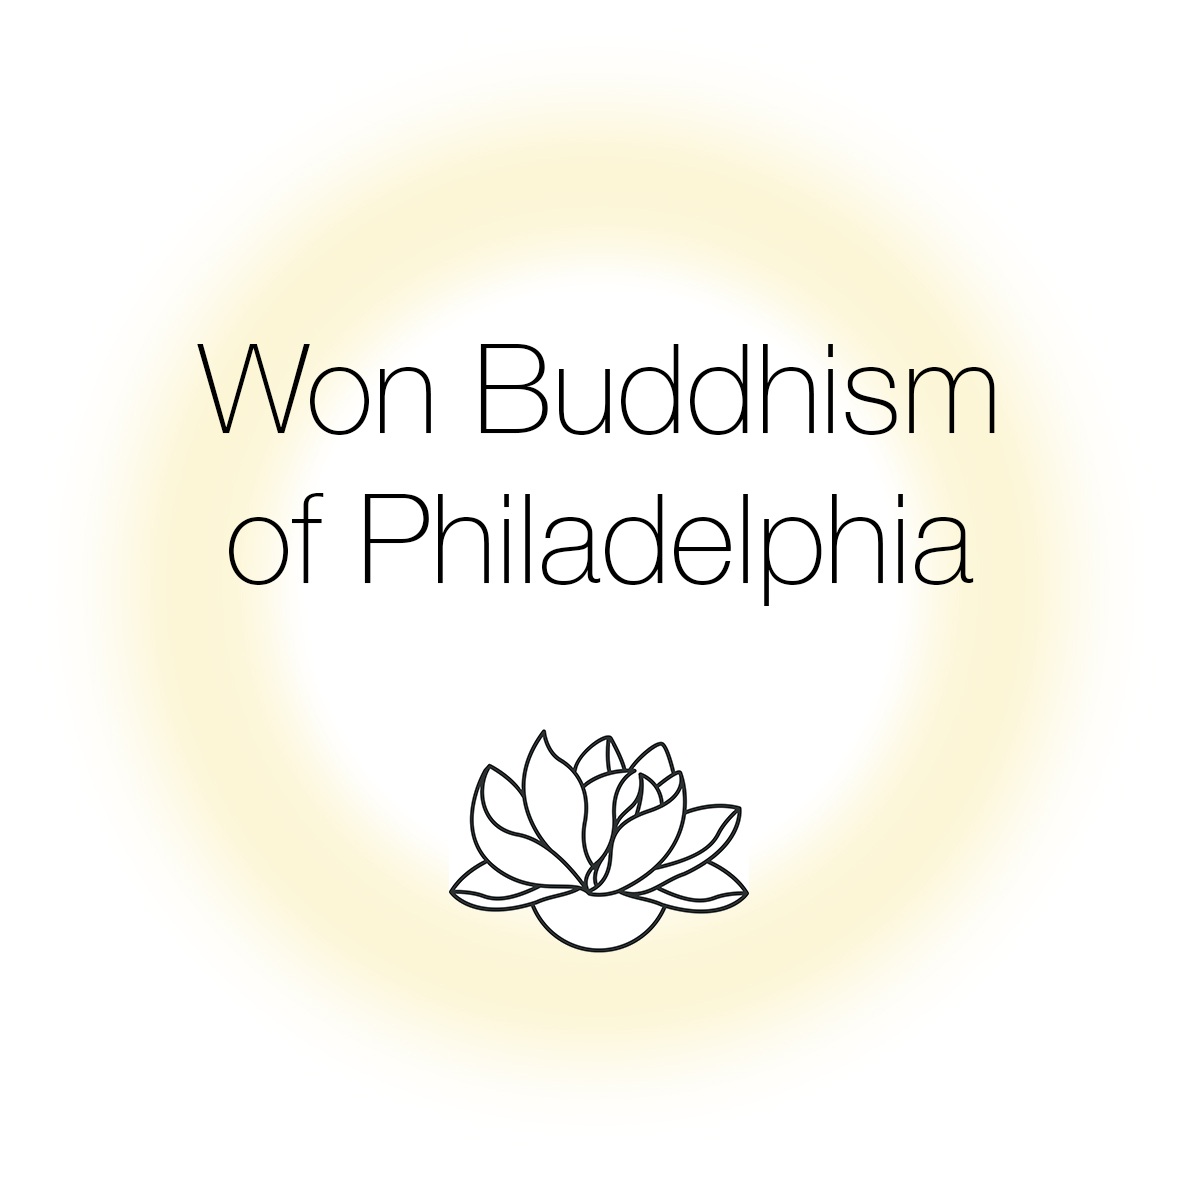 Won Buddhism of Philadelphia